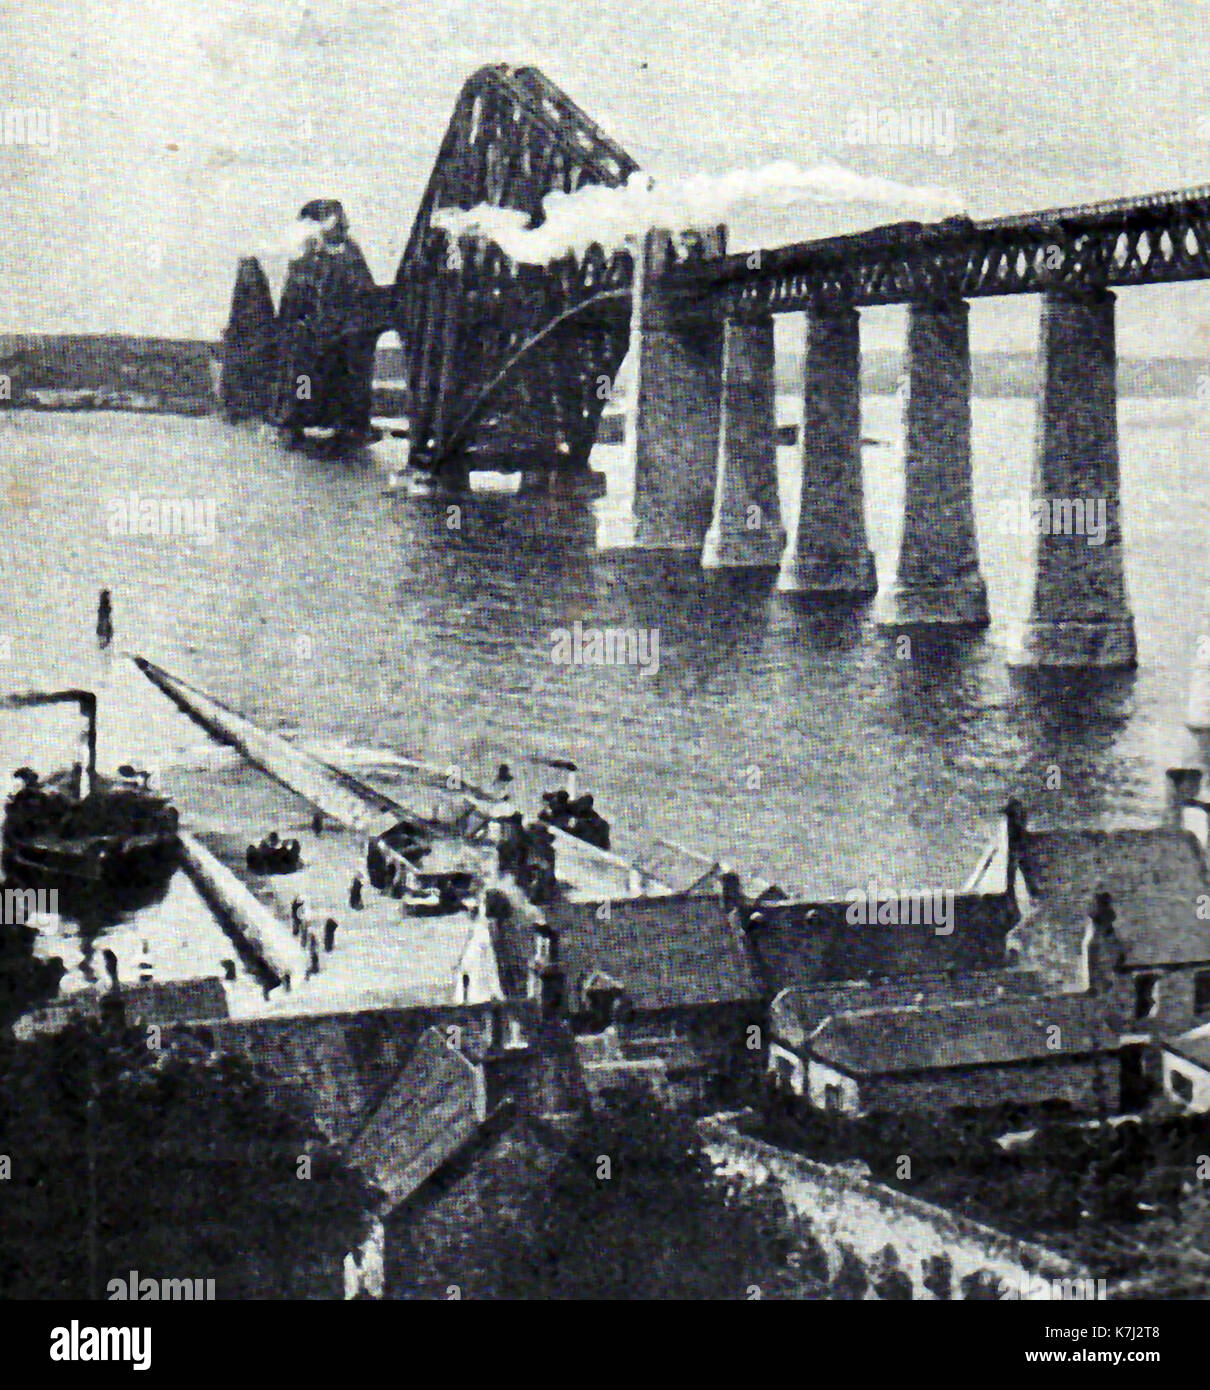 1914 - Le Pont du Forth en Écosse avec un train à vapeur le traversant venant vers le ferry ferry terminal en bas à gauche de l'image. Banque D'Images